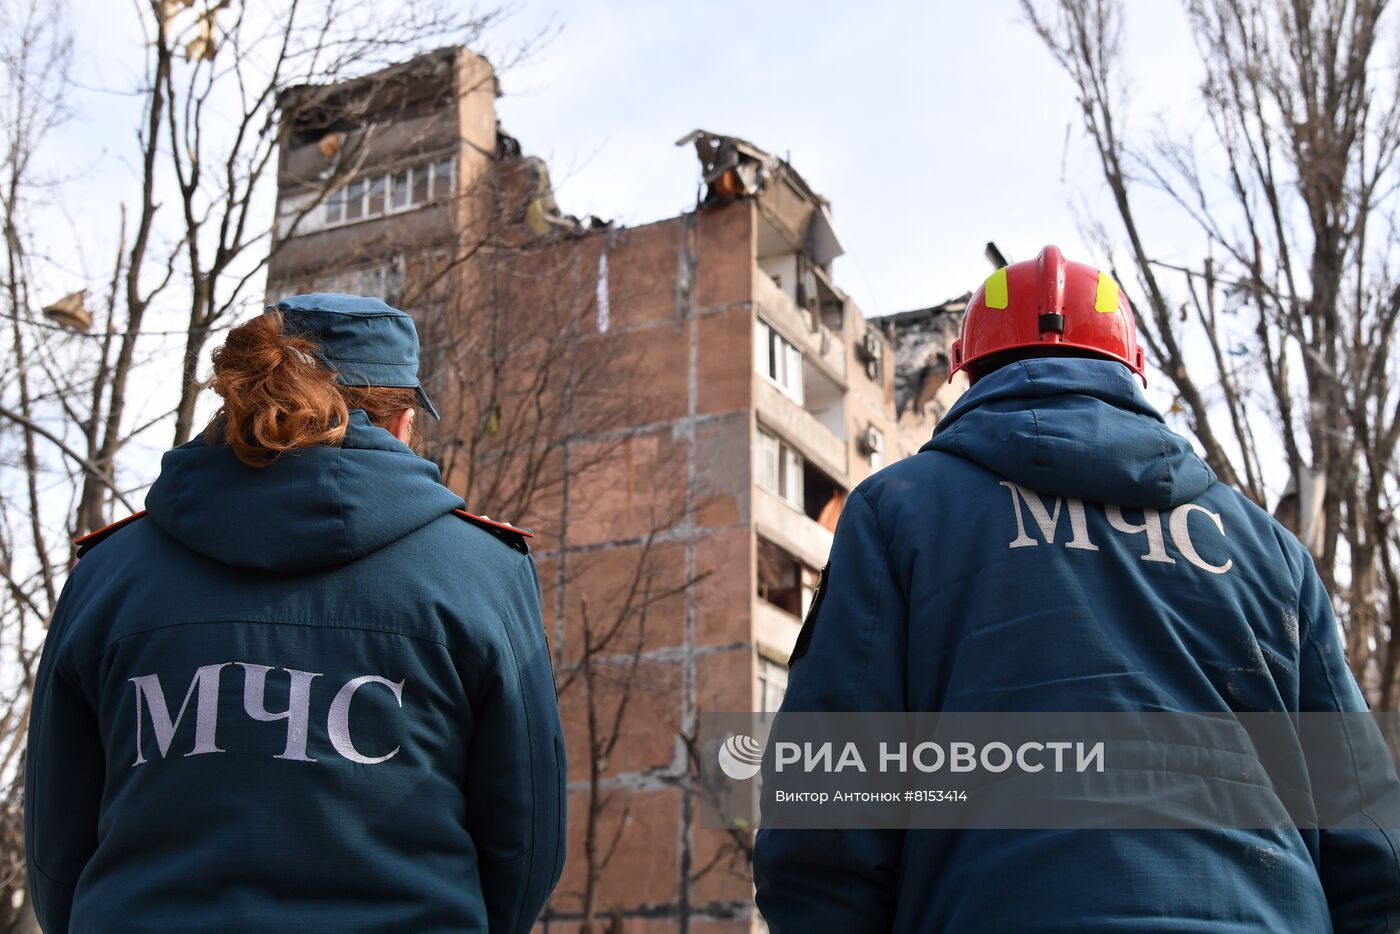 Последствия попадания снаряда ВСУ в жилой дом в Донецке